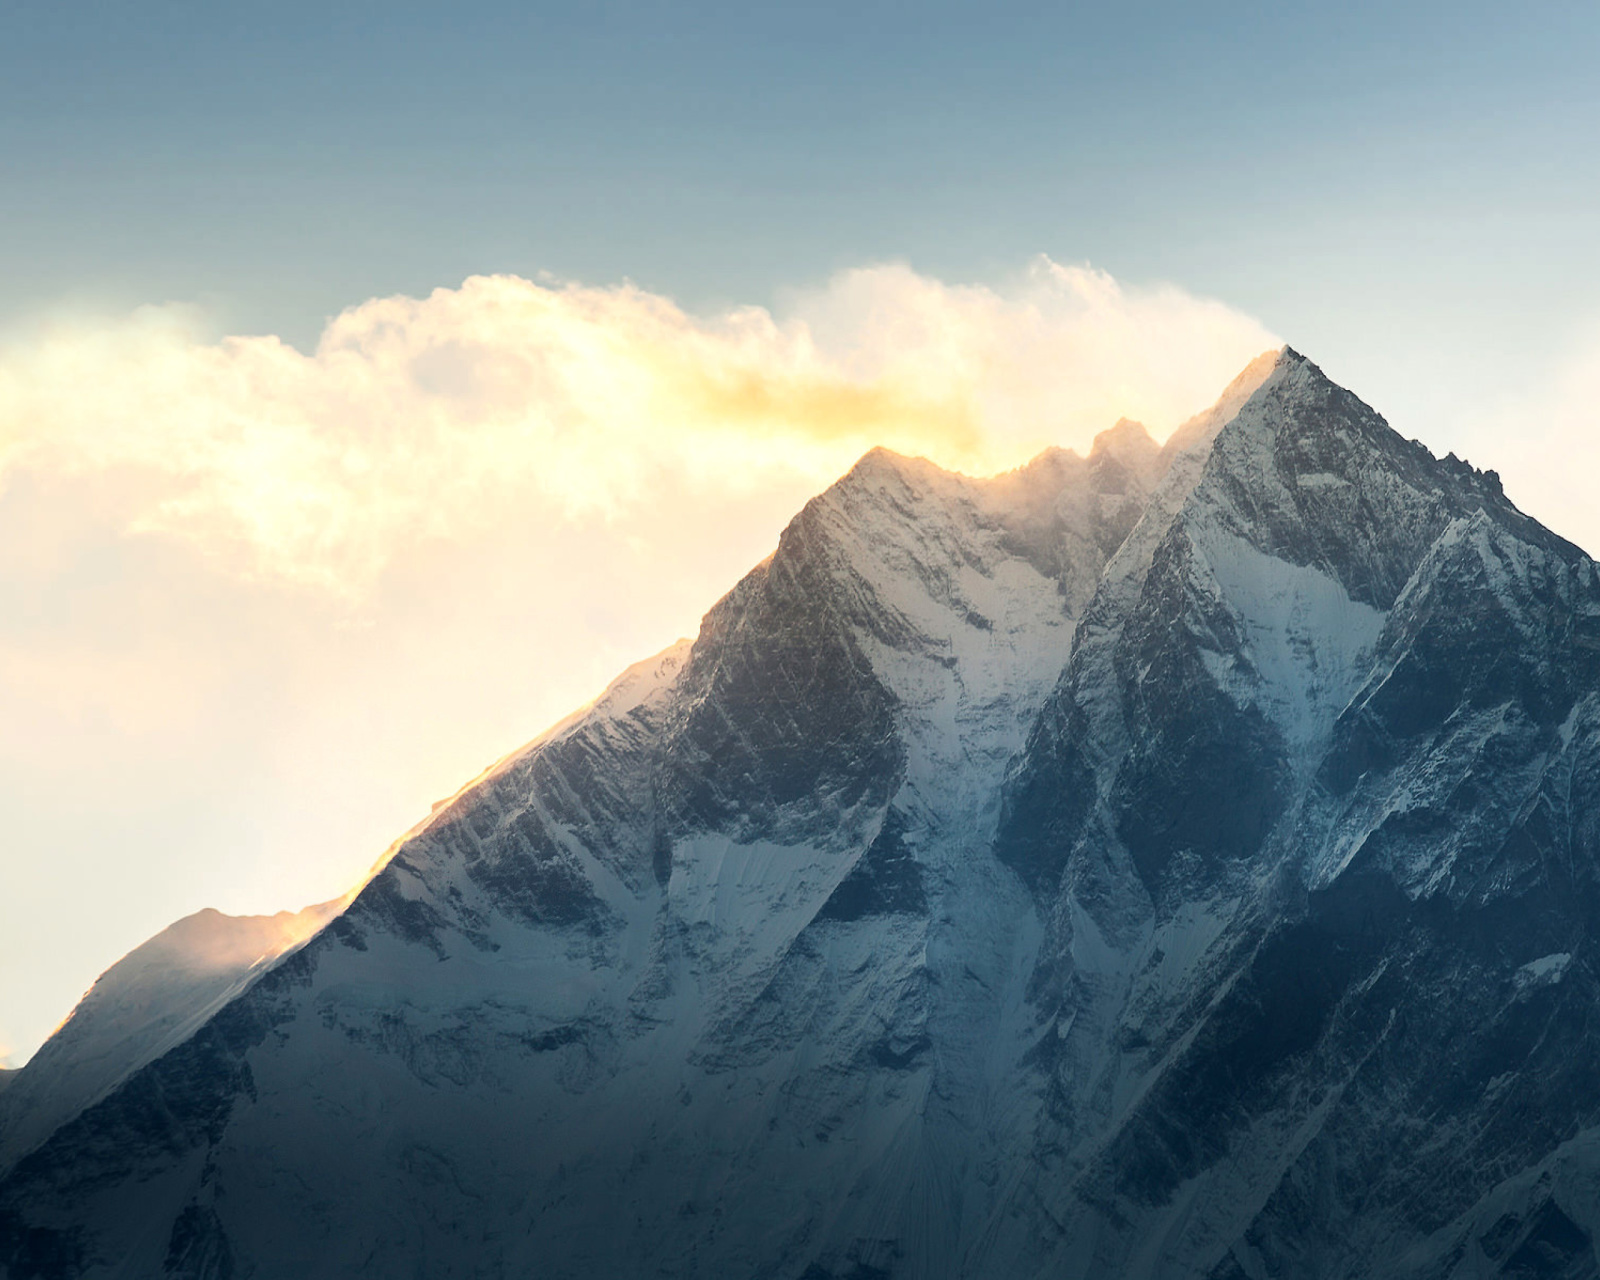 Обои Everest in Nepal 1600x1280